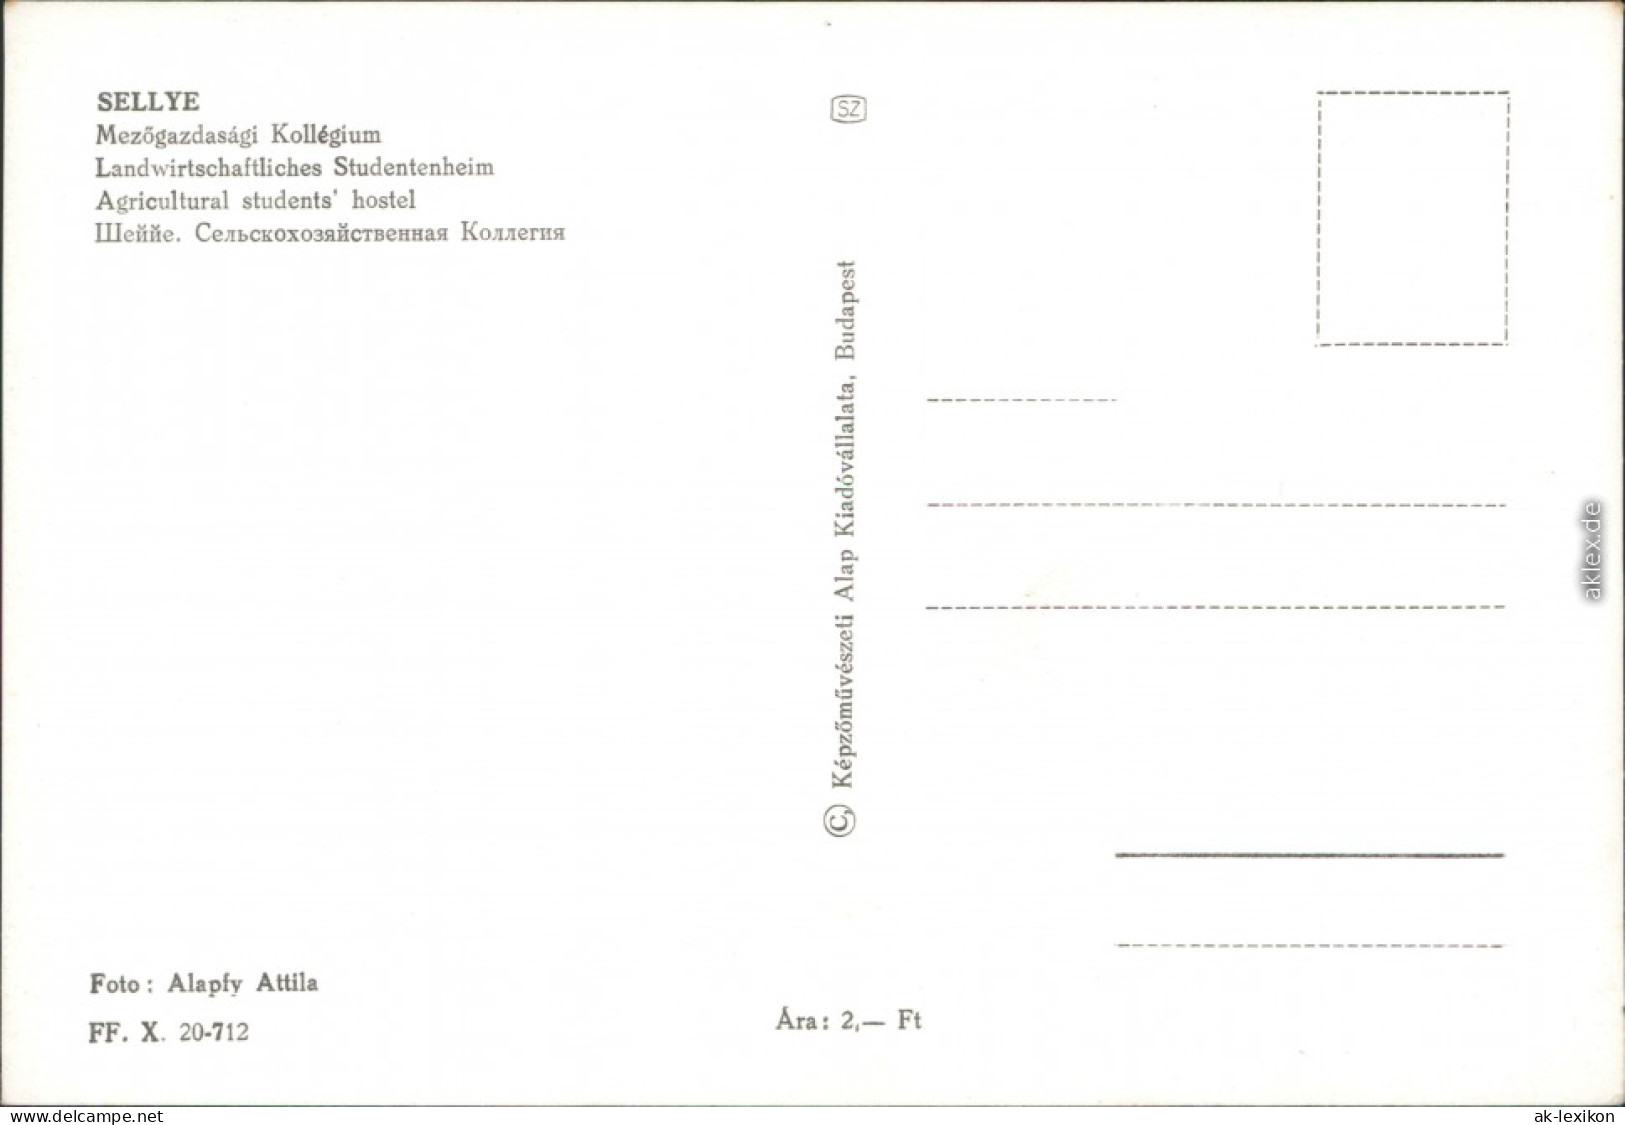 Ansichtskarte Sellye Landwirtschaftliches Studentenwohnheim 1976 - Ungheria